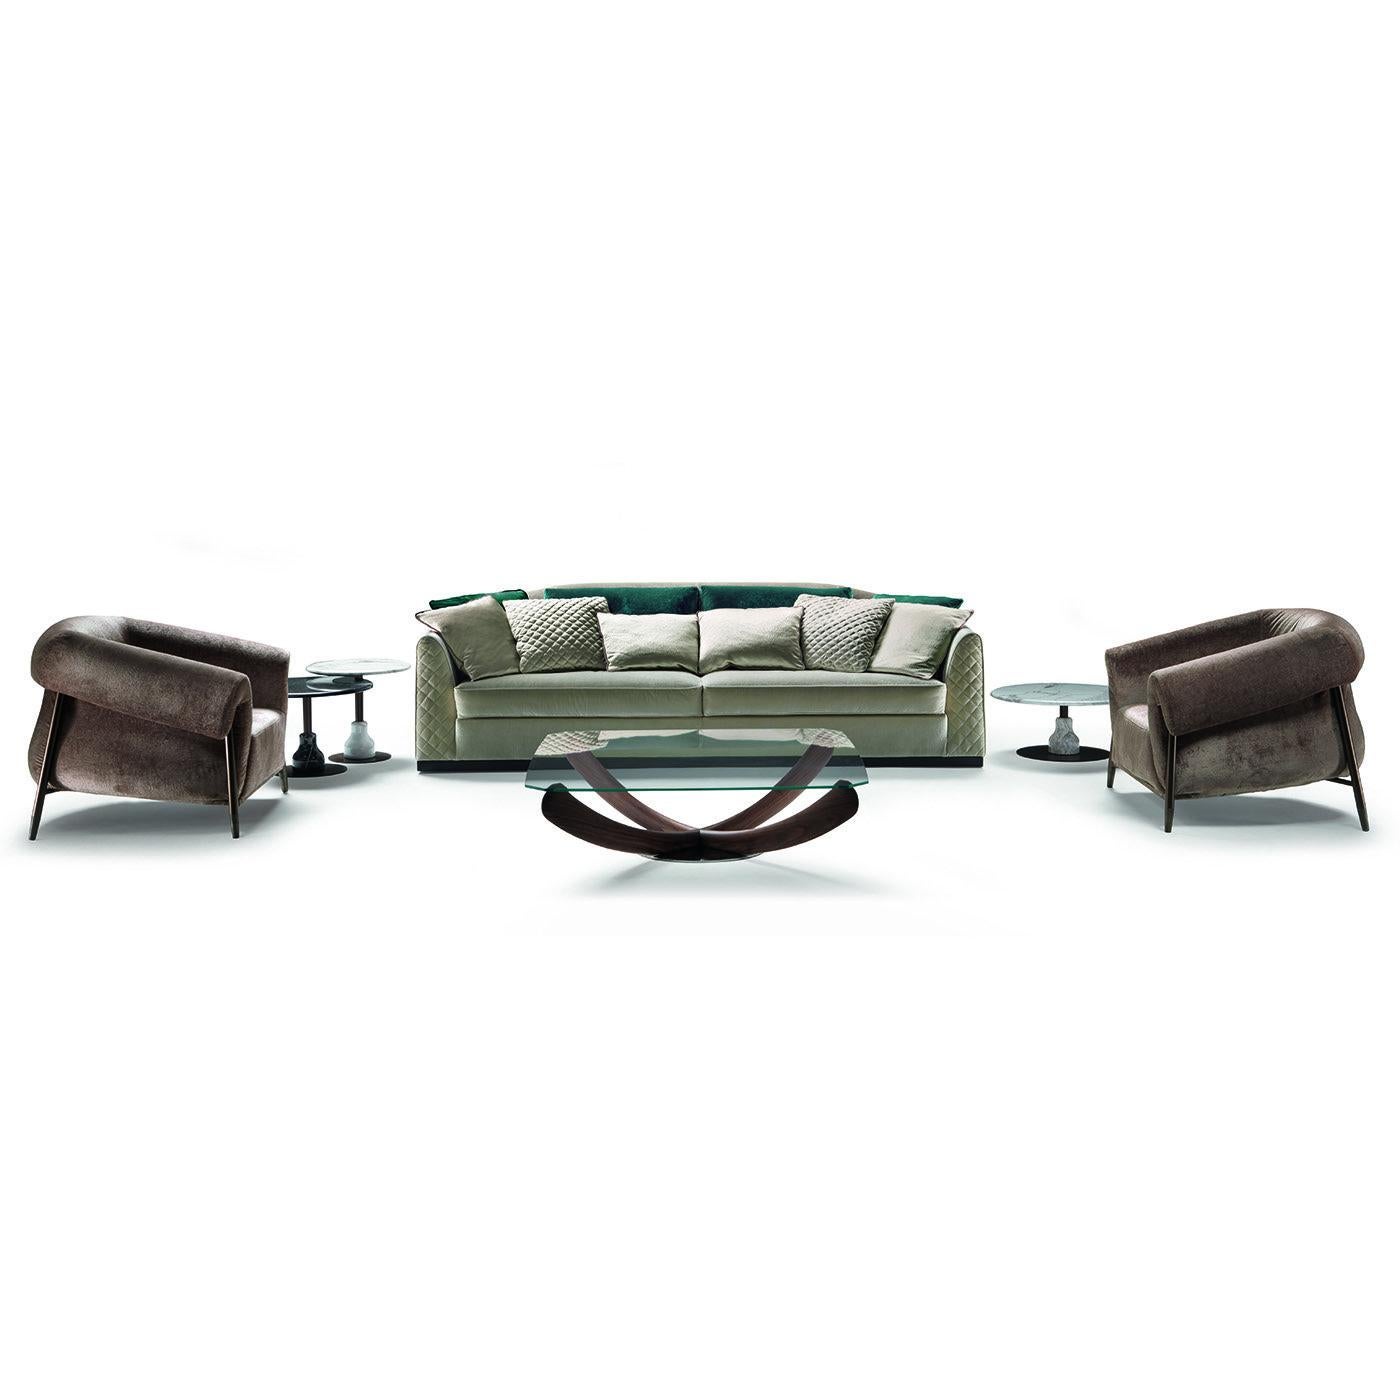 Dieses elegante und zeitgemäße Sofa verkörpert Zanabonis Liebe zum Detail, exquisite Handwerkskunst und die Qualität der Materialien. Die geometrische Schlichtheit der Silhouette strahlt klassische Raffinesse aus, während die exklusiven Details der